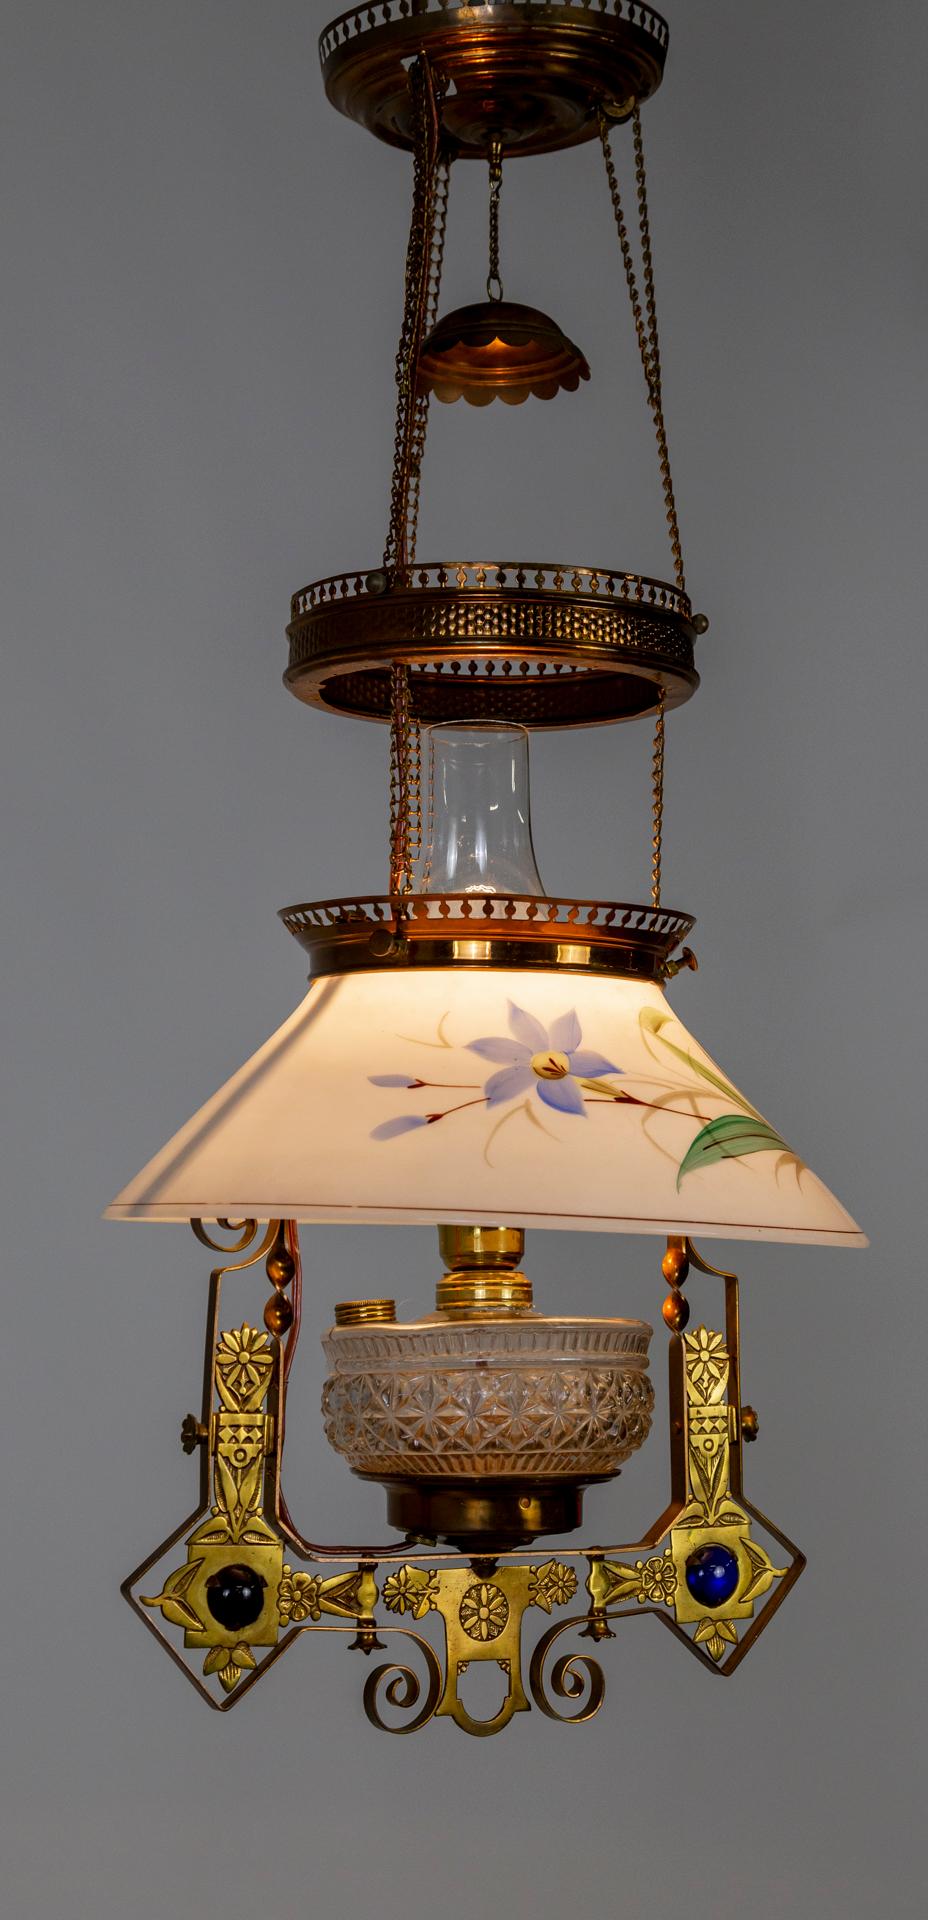 Une longue lampe à huile de bibliothèque, suspendue, datant du milieu des années 1880, dans un style victorien Eastlake saisissant ; maintenant électrifiée. Un design à plusieurs niveaux en cuivre et en laiton sur des chaînes retenant l'abat-jour,